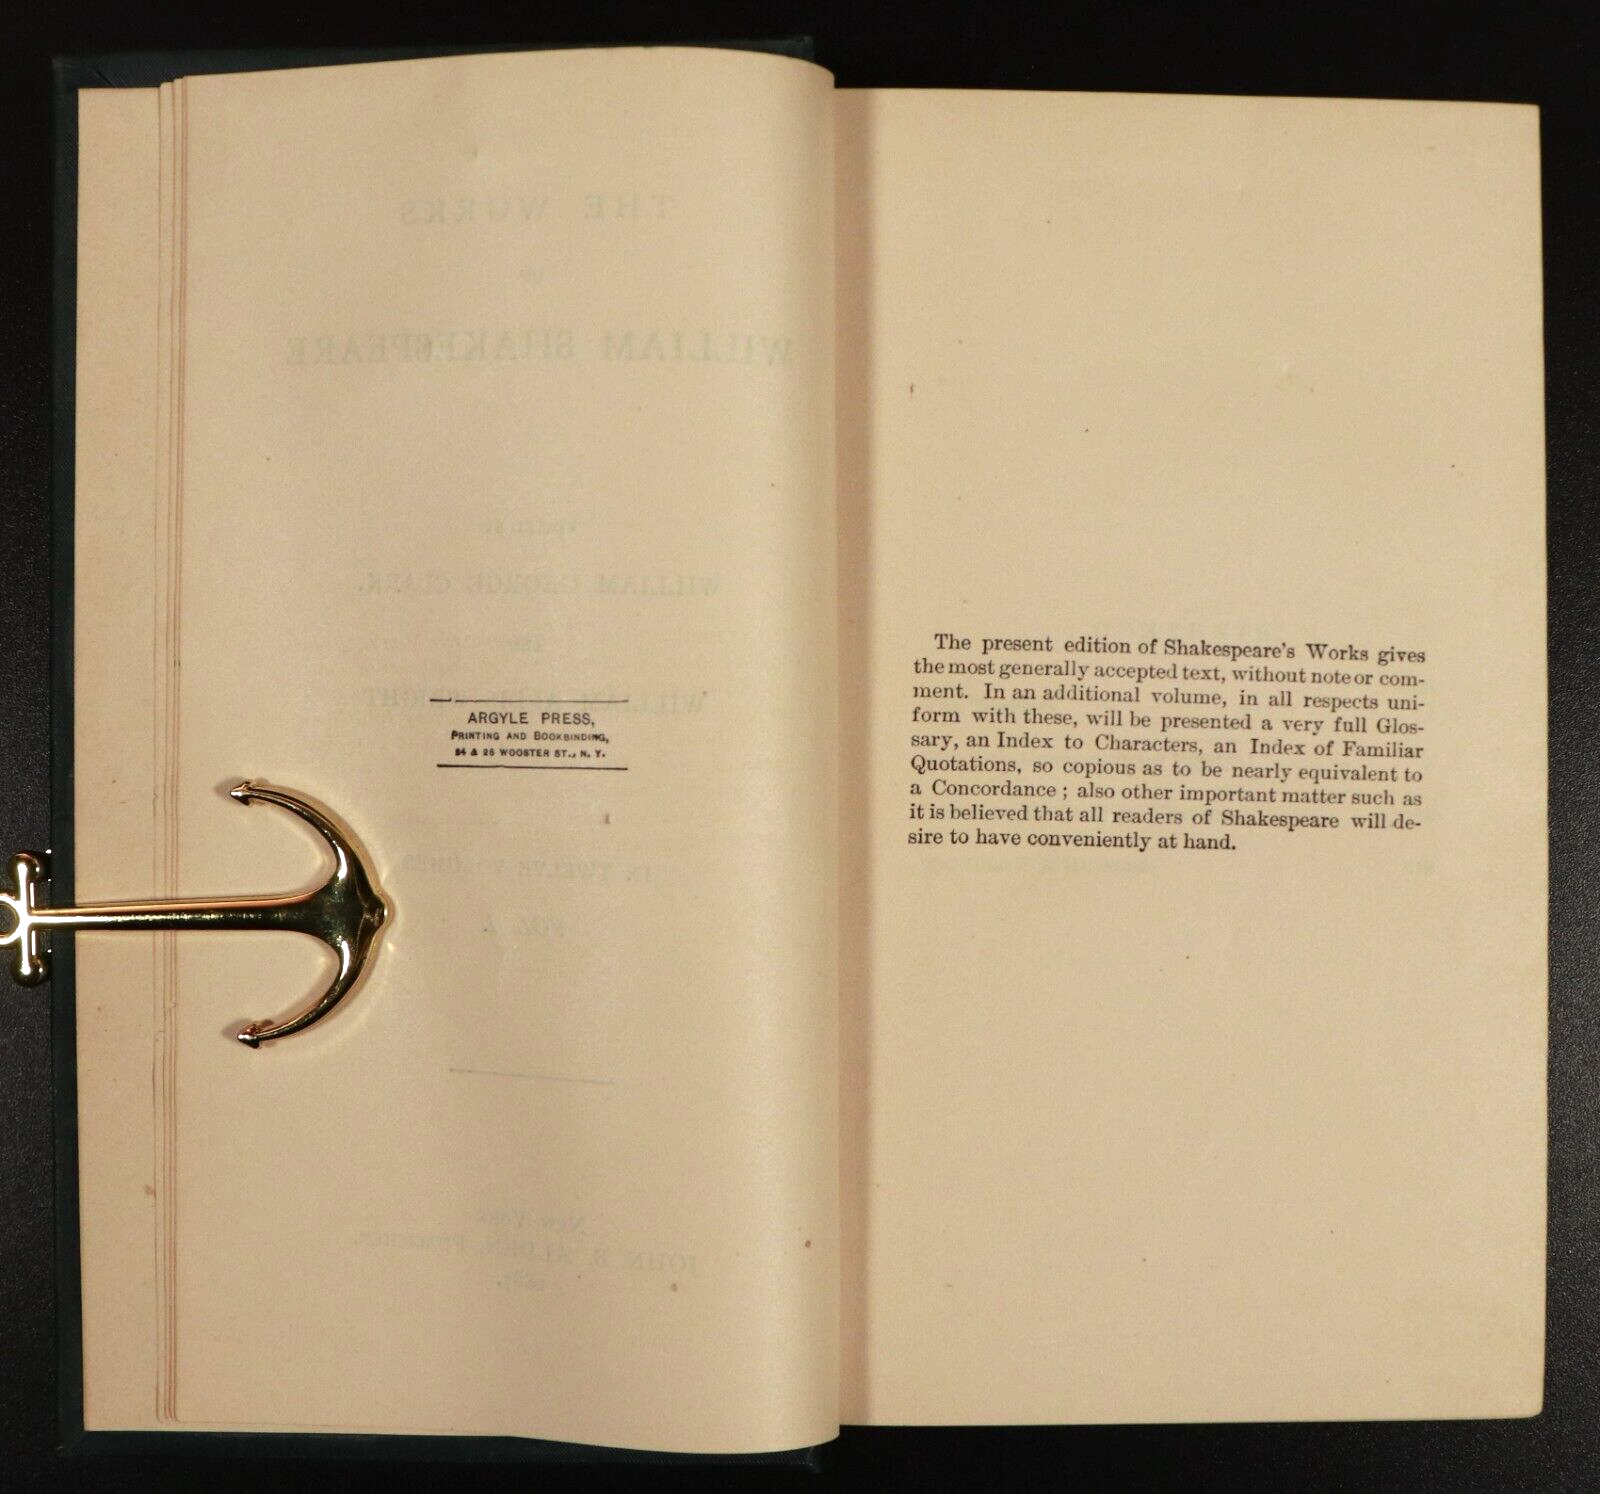 1887 12vol The Works Of William Shakespeare Antique Classic Literature Book Set